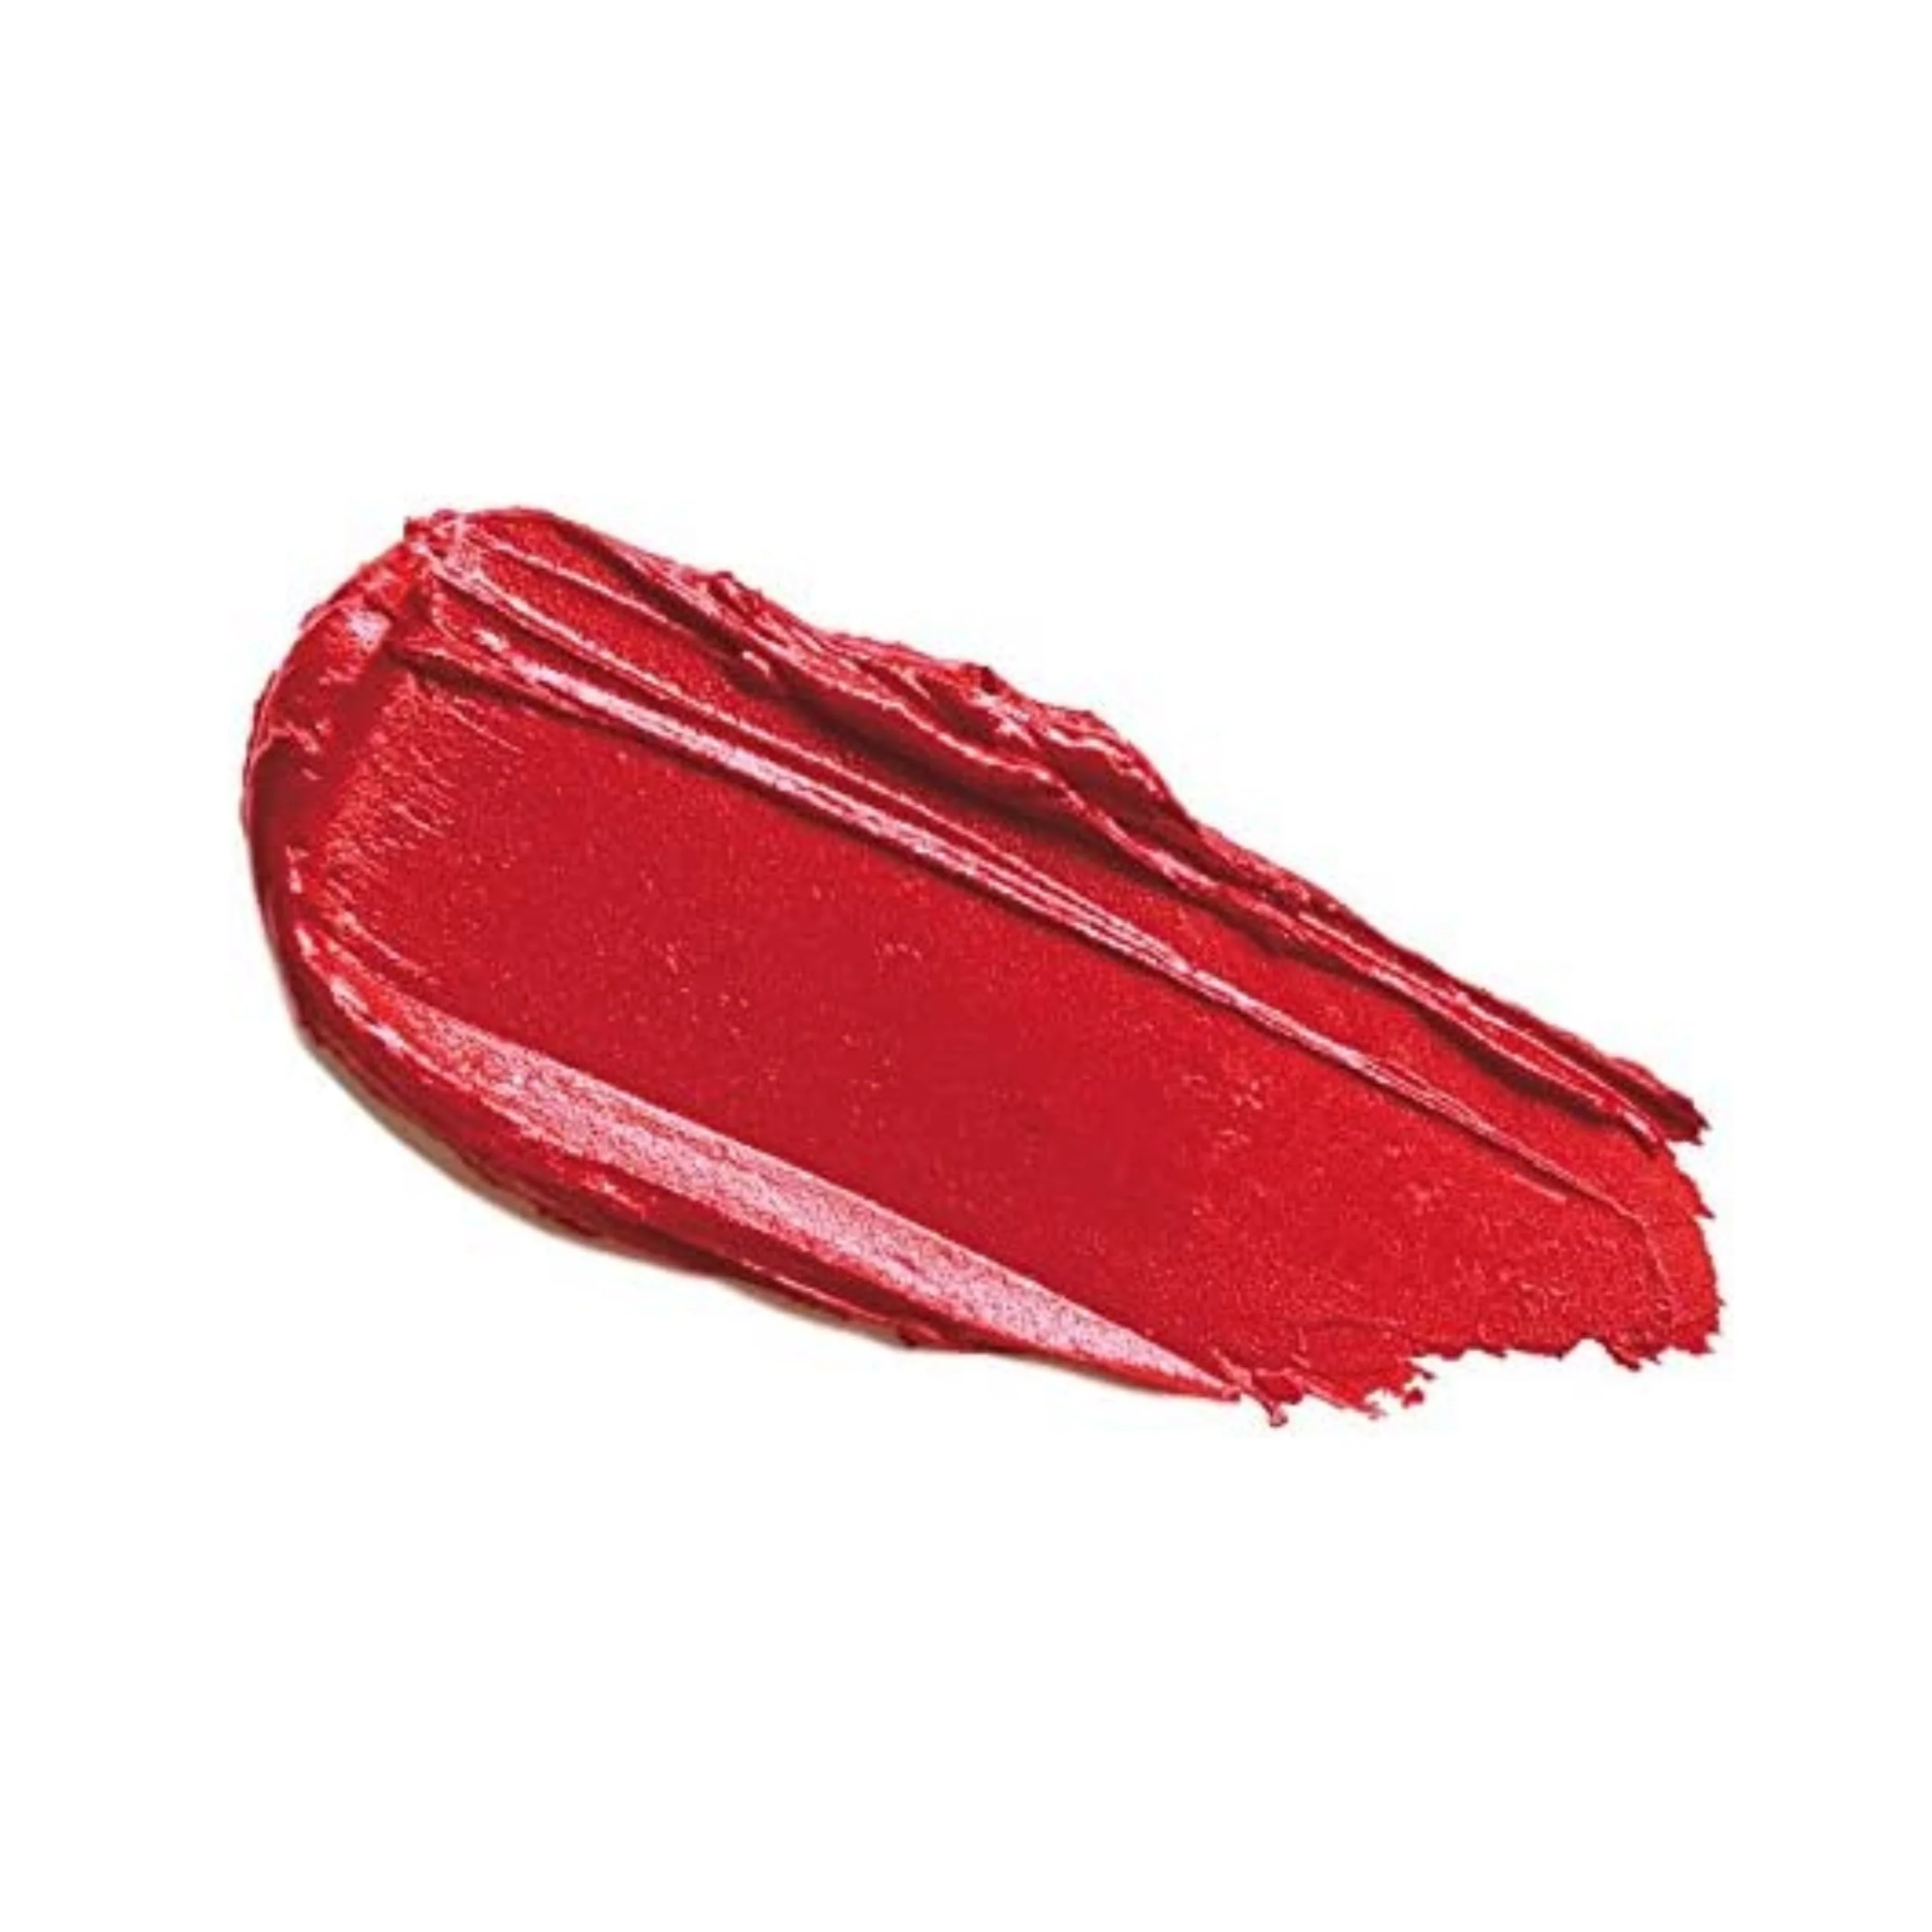 Lavera Beautiful Lips Colour Intense -huulipuna Timeless Red 34